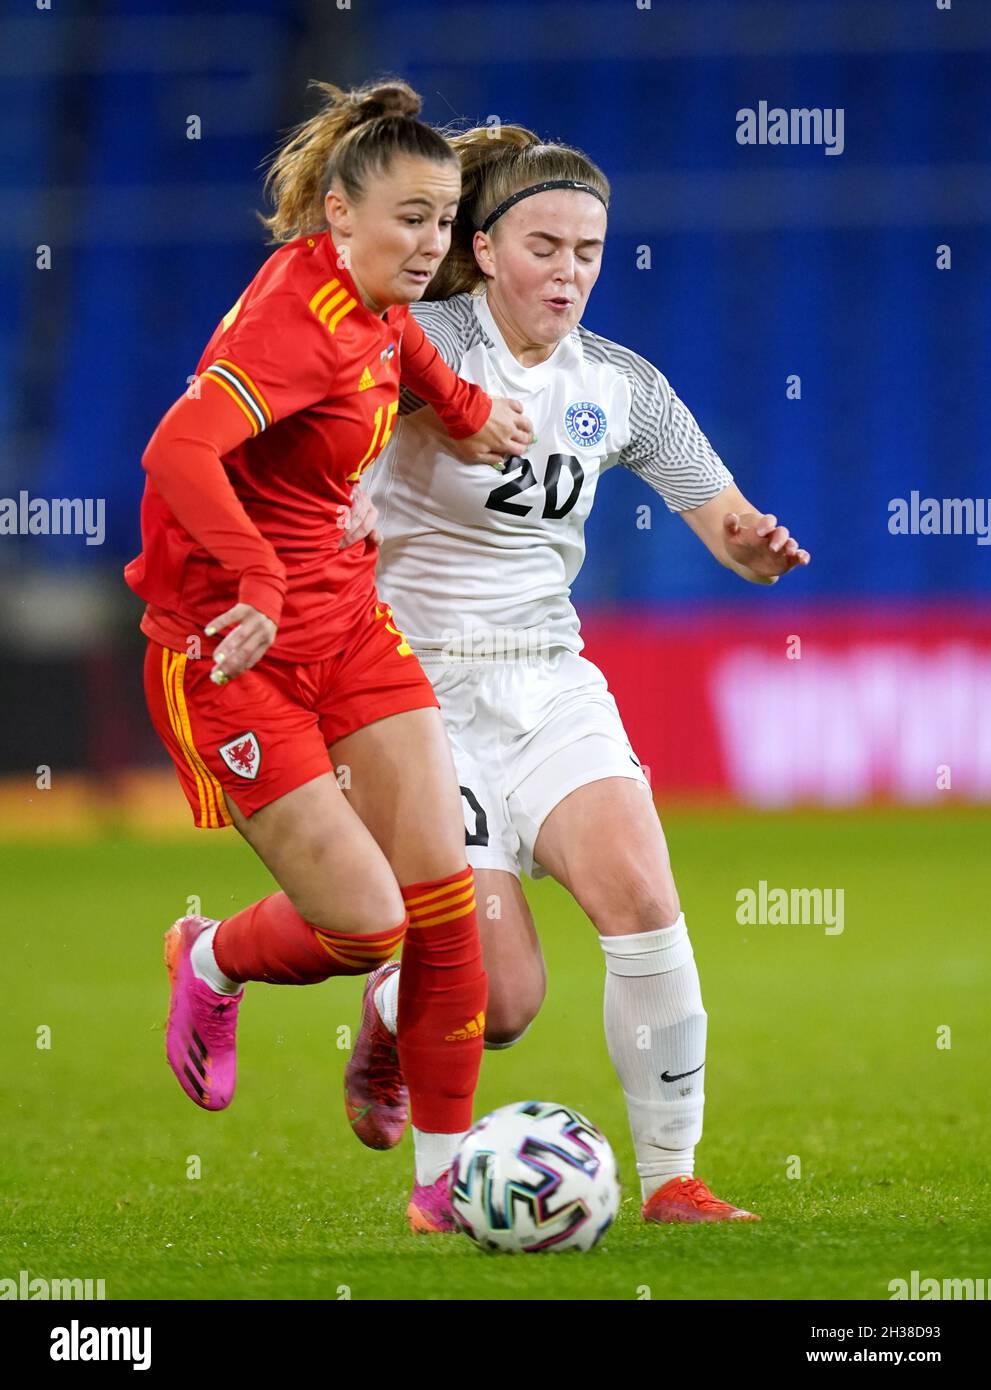 Hannah Cain (à gauche) du pays de Galles et Eva-Maria NIIT en Estonie se battent pour le ballon lors du match de qualification de l'UEFA de la coupe du monde des femmes de la FIFA 2023 au stade de Cardiff City.Date de la photo: Mardi 26 octobre 2021. Banque D'Images